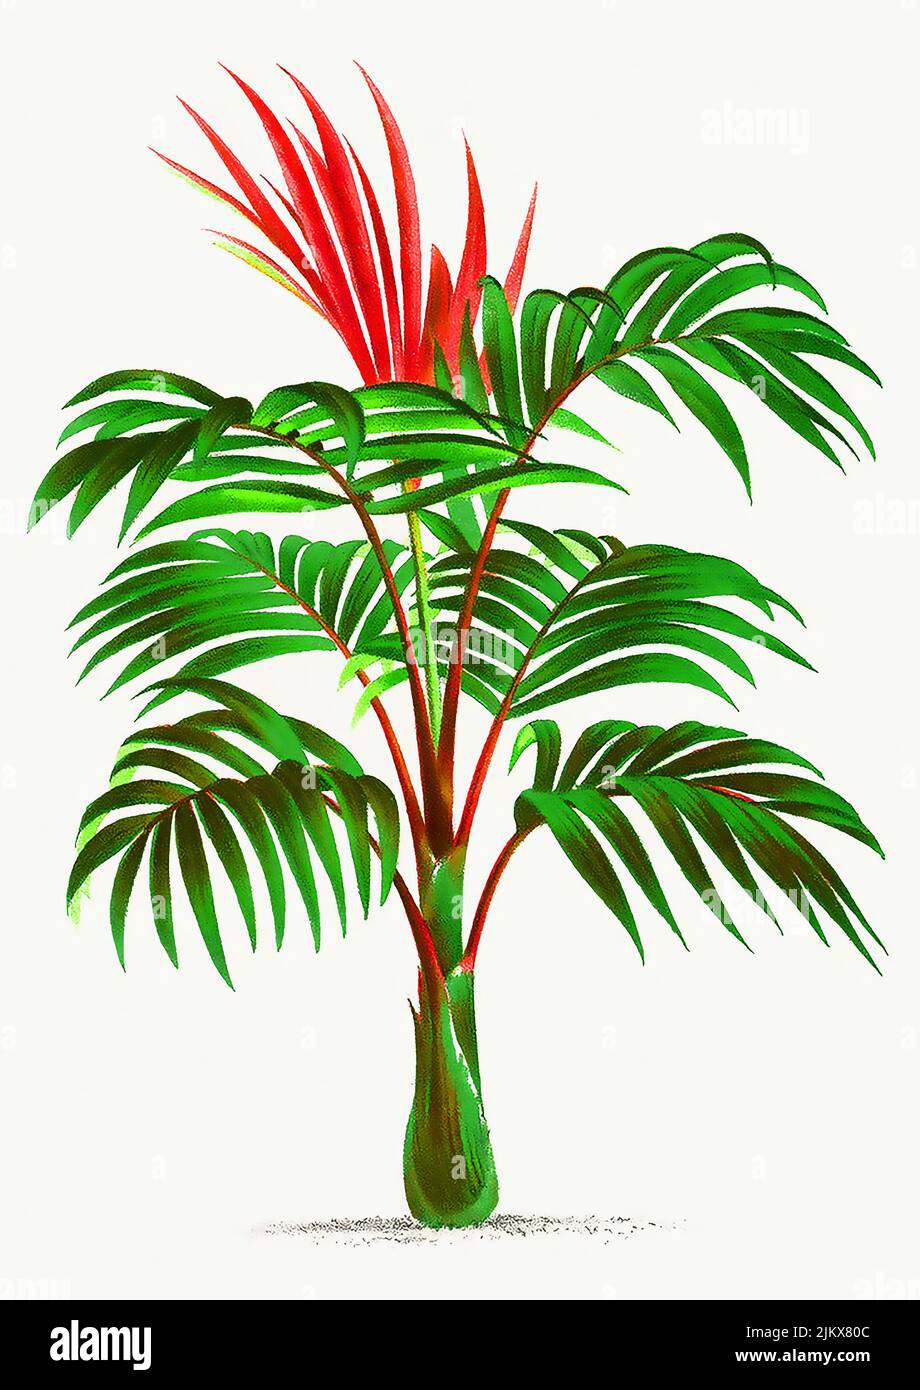 Illustrazione della palma vintage. Migliorata digitalmente dalla nostra copia originale di Les Palmiers Histoire Iconographique (1878), illustrata da Oswald de Foto Stock